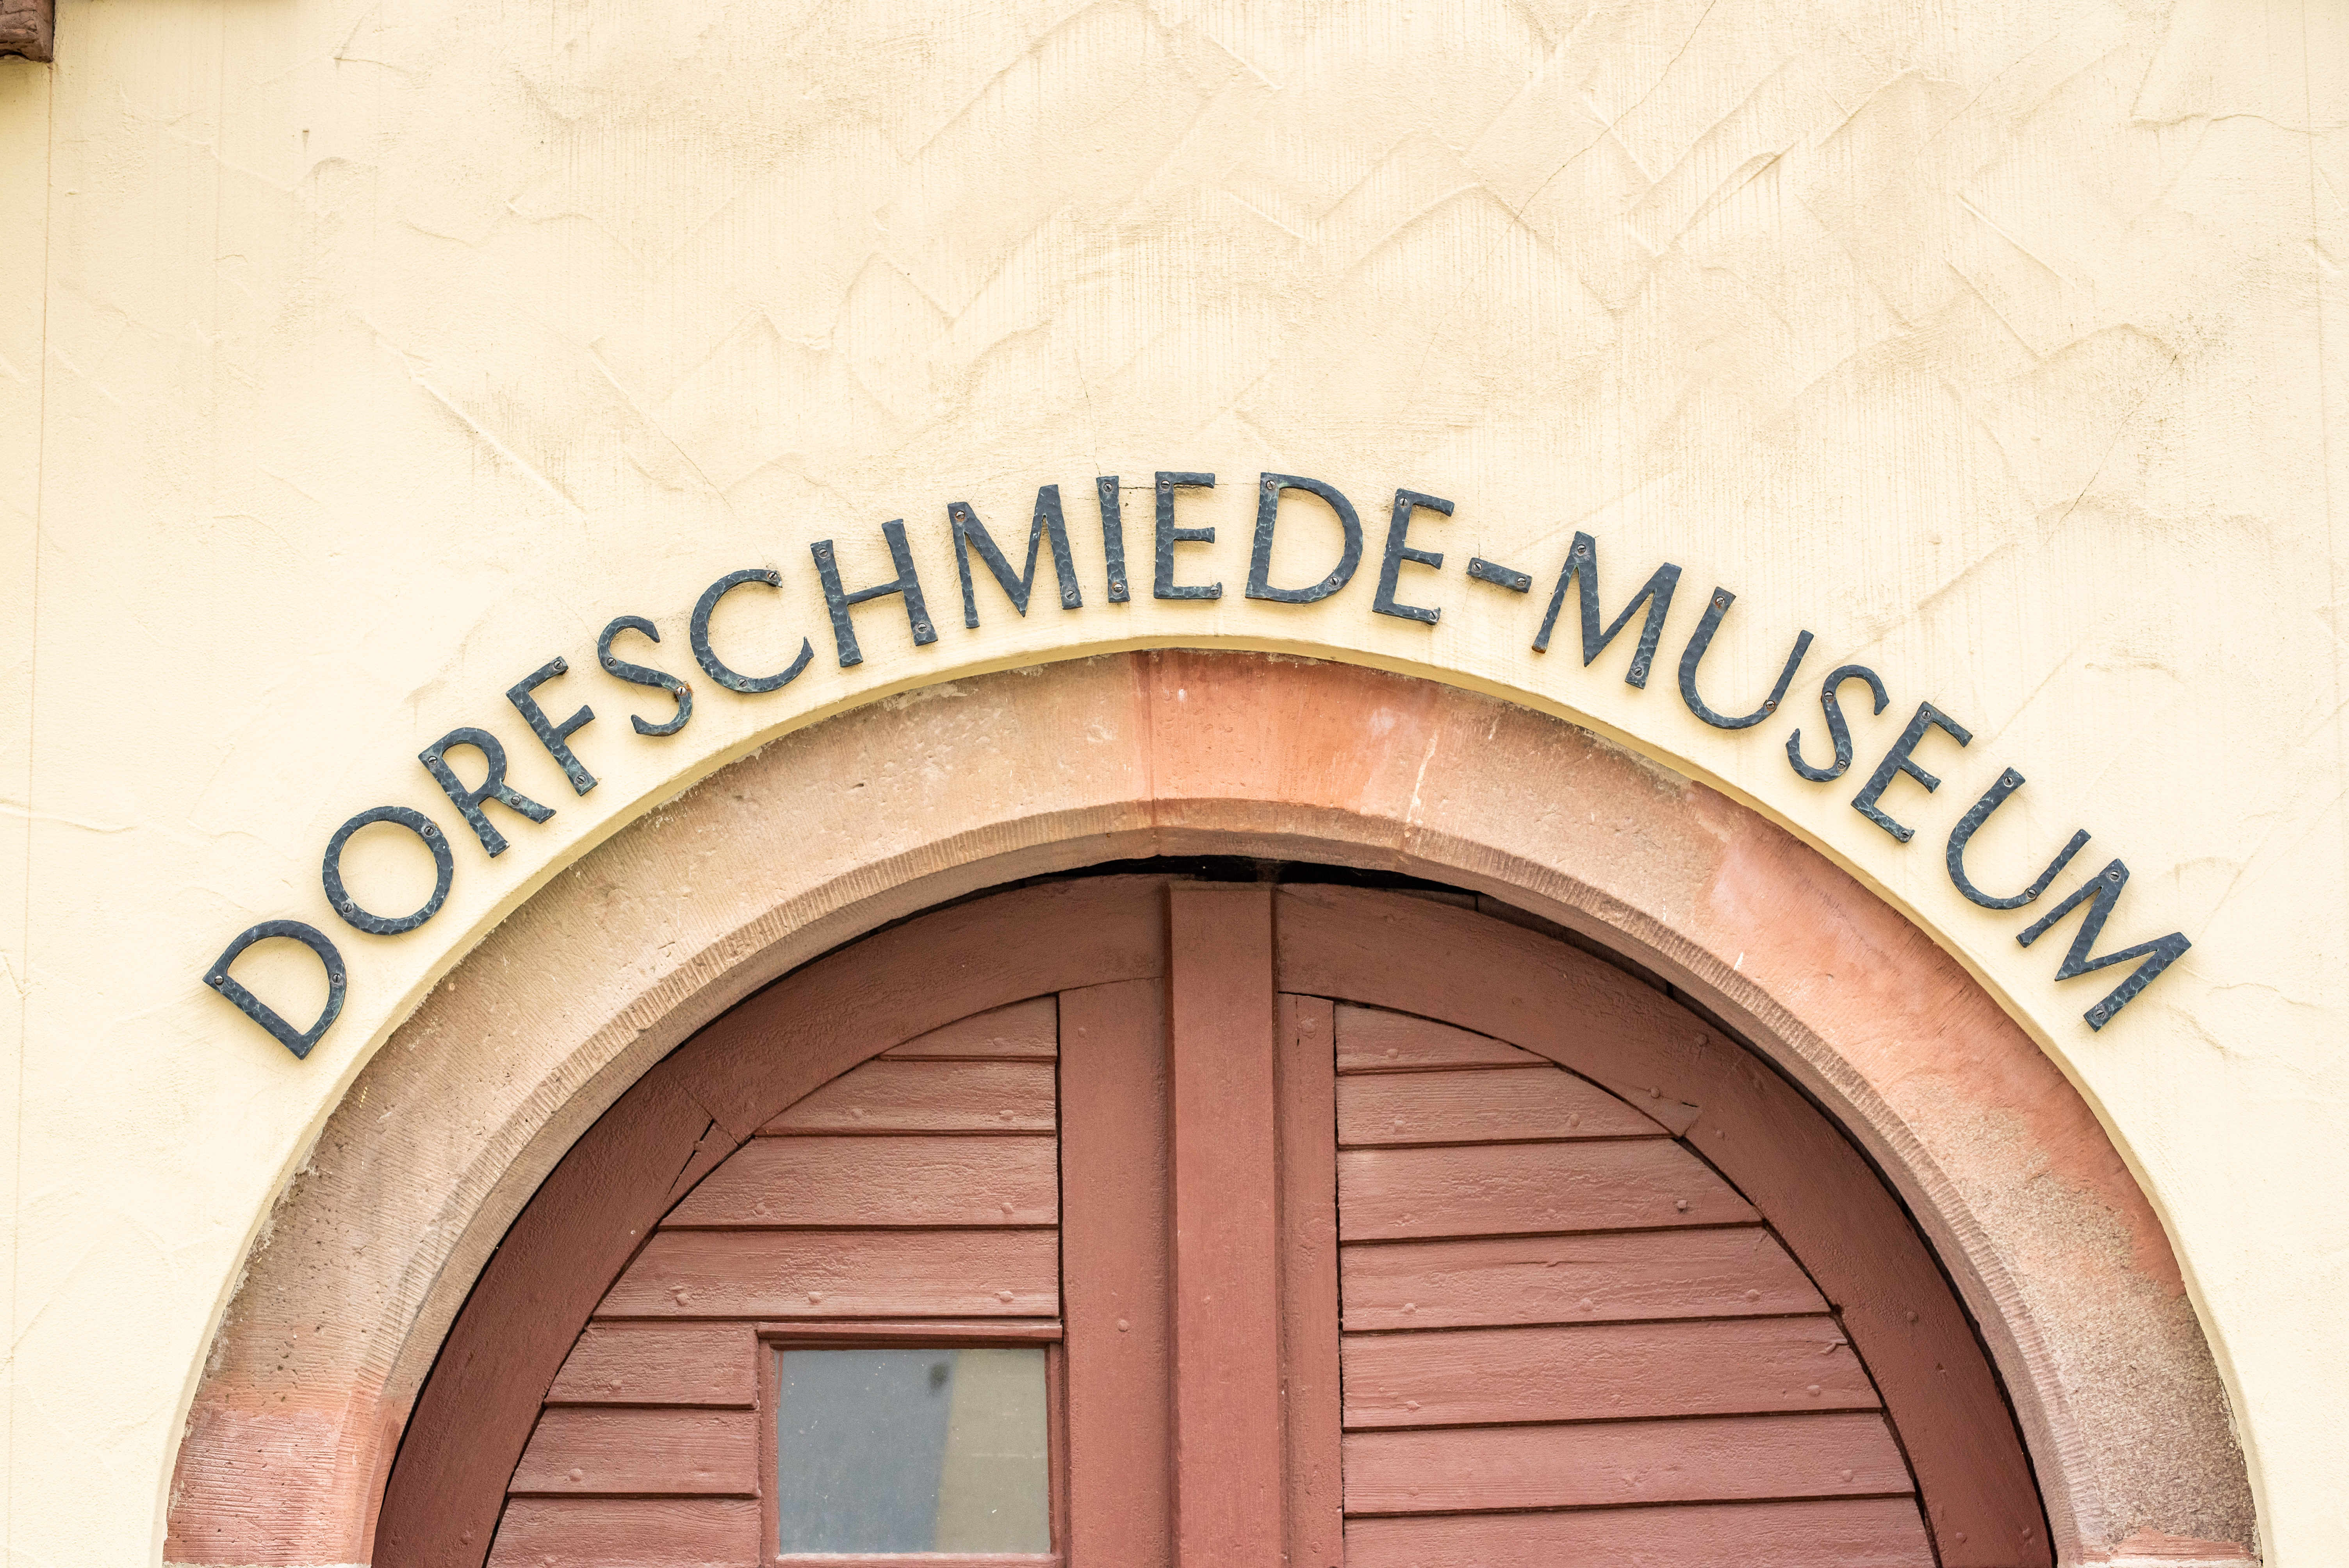  Dorfschmiede-Museum Empfingen - Bild: Christian Bergst 